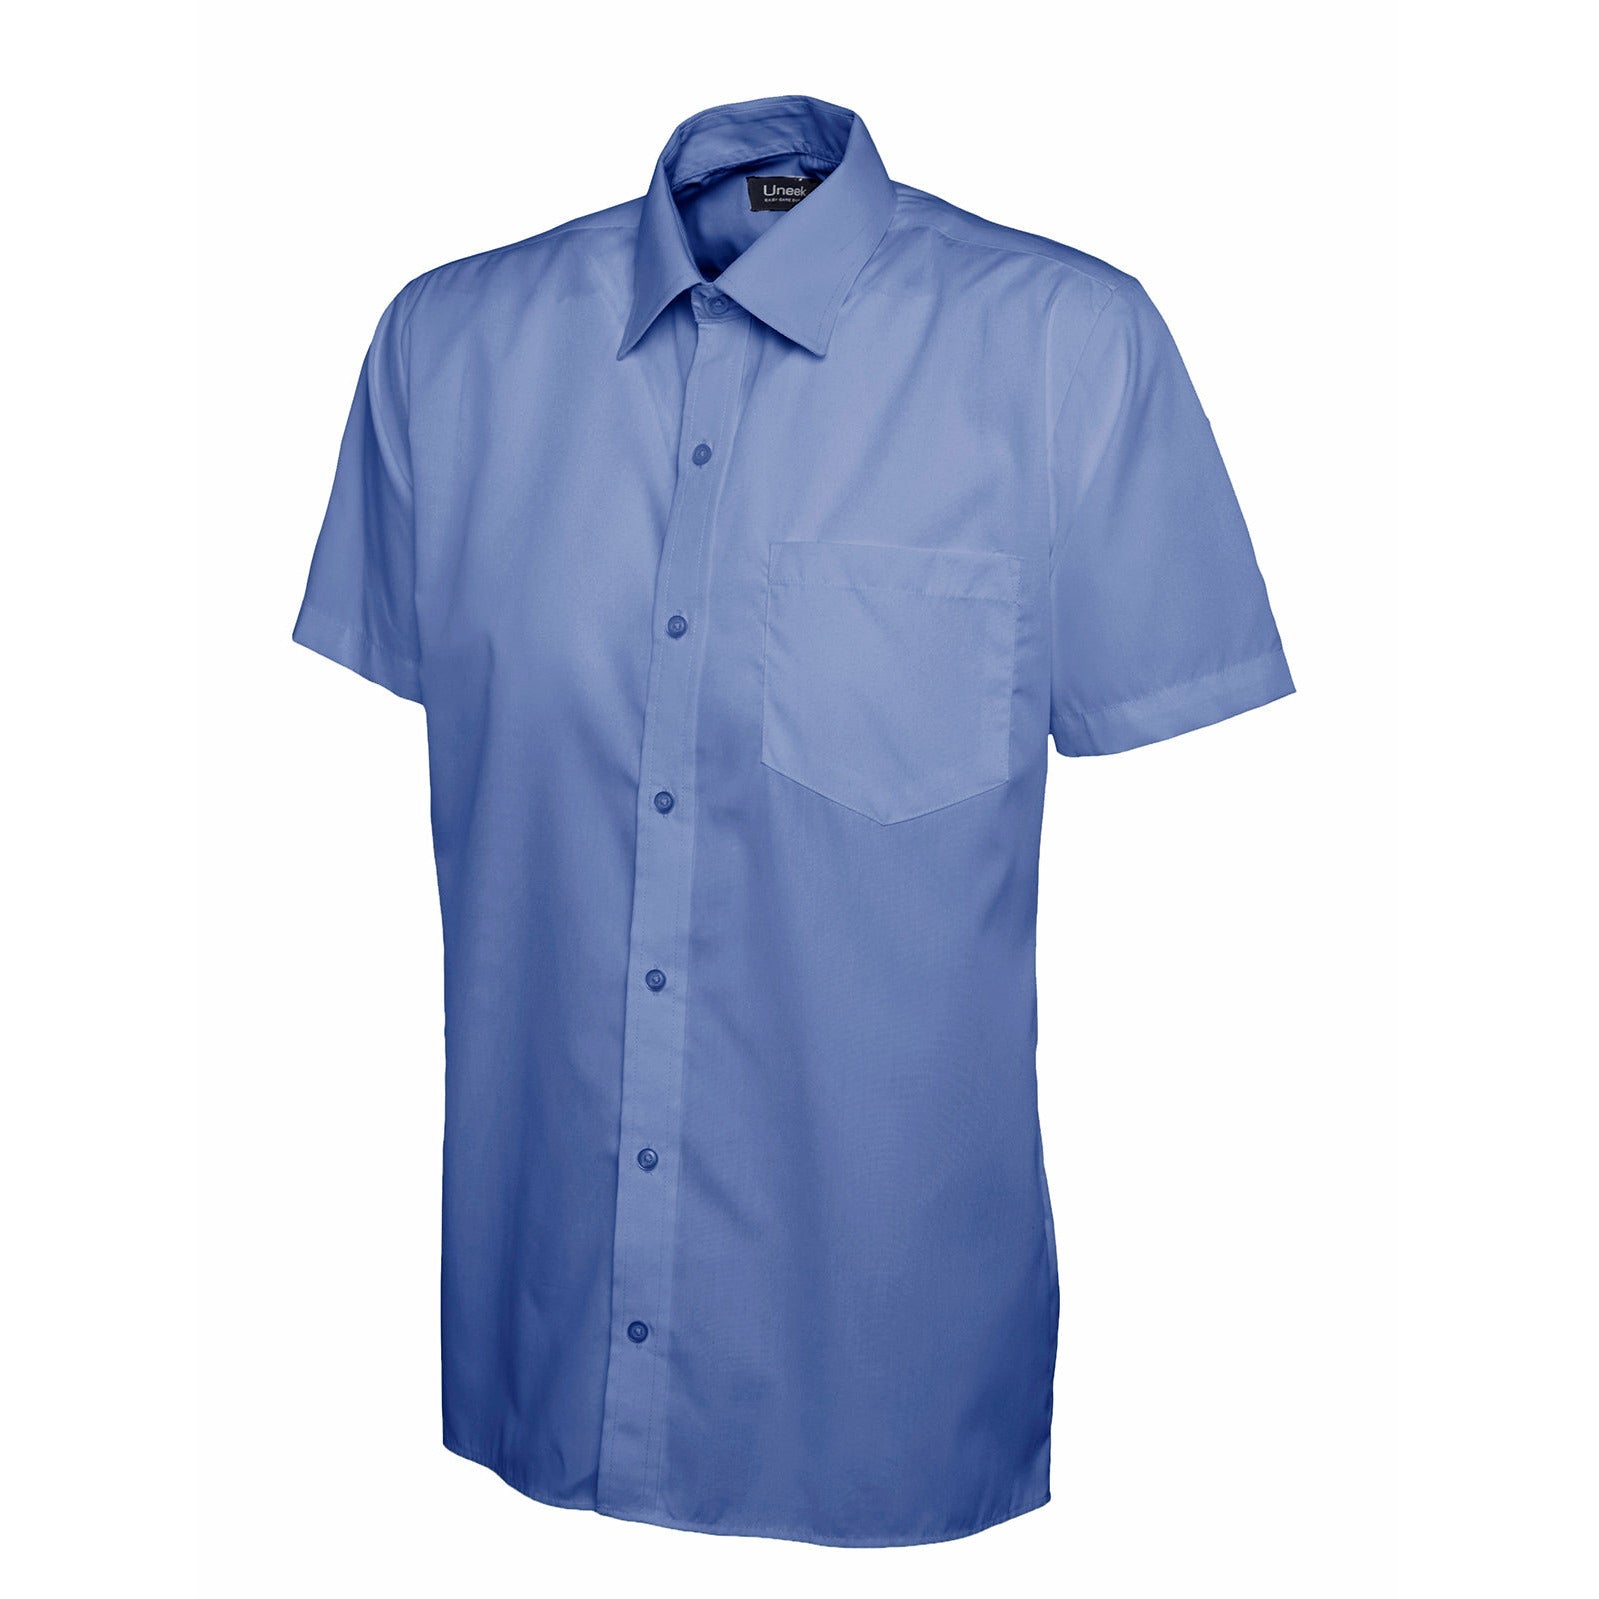 Mens Poplin Half Sleeve Shirt (14.5 - 16.5) - Mid Blue